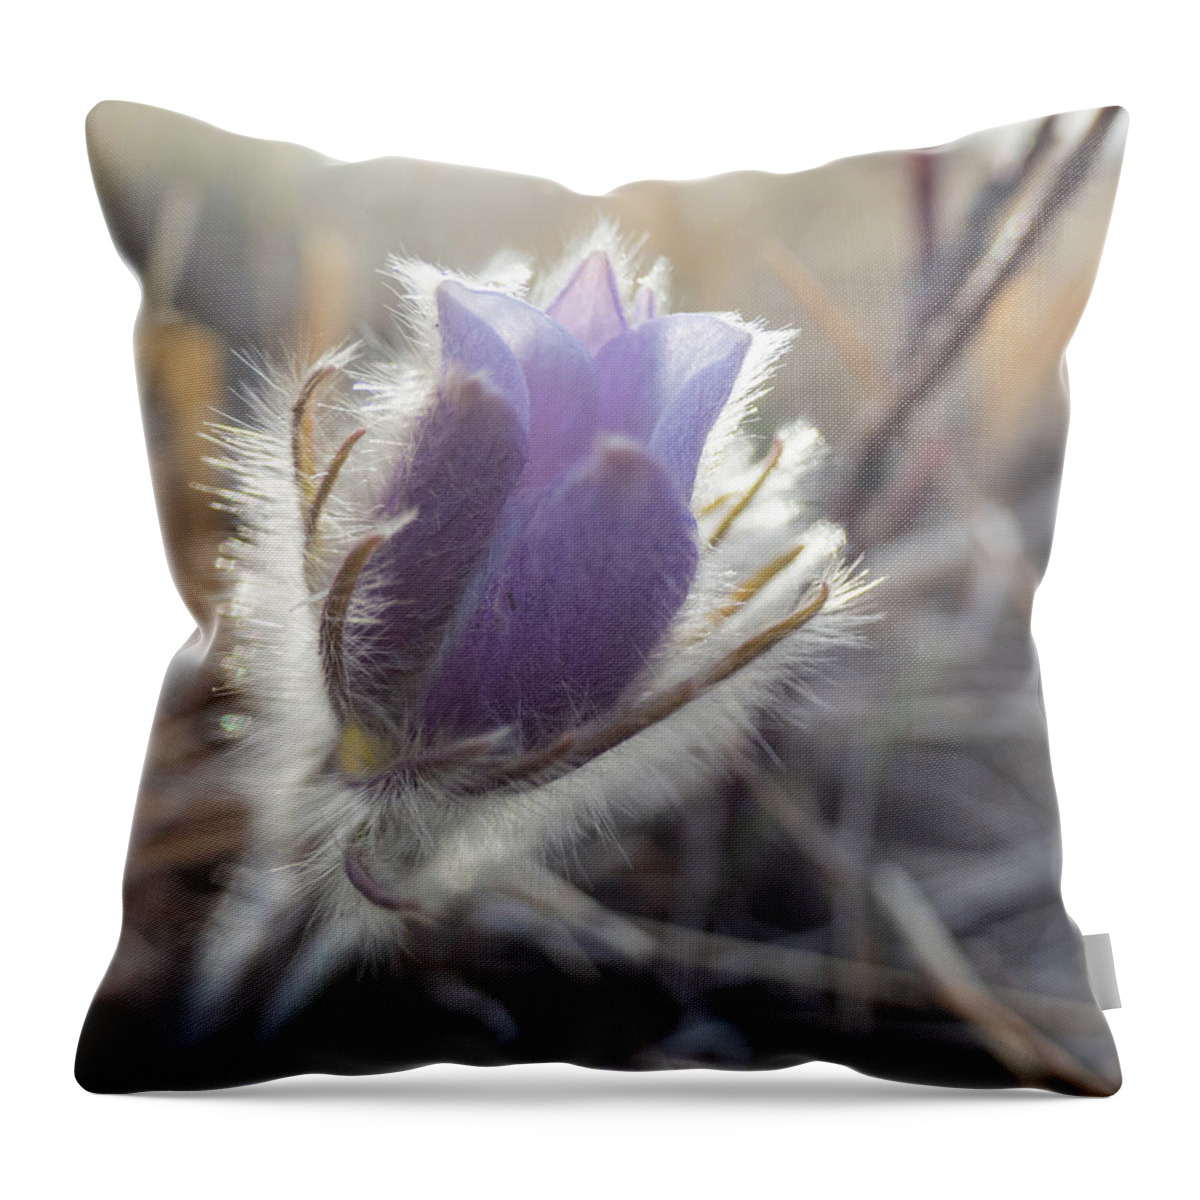 Crocus Throw Pillow featuring the photograph First Spring Prairie Crocus Flower by Karen Rispin